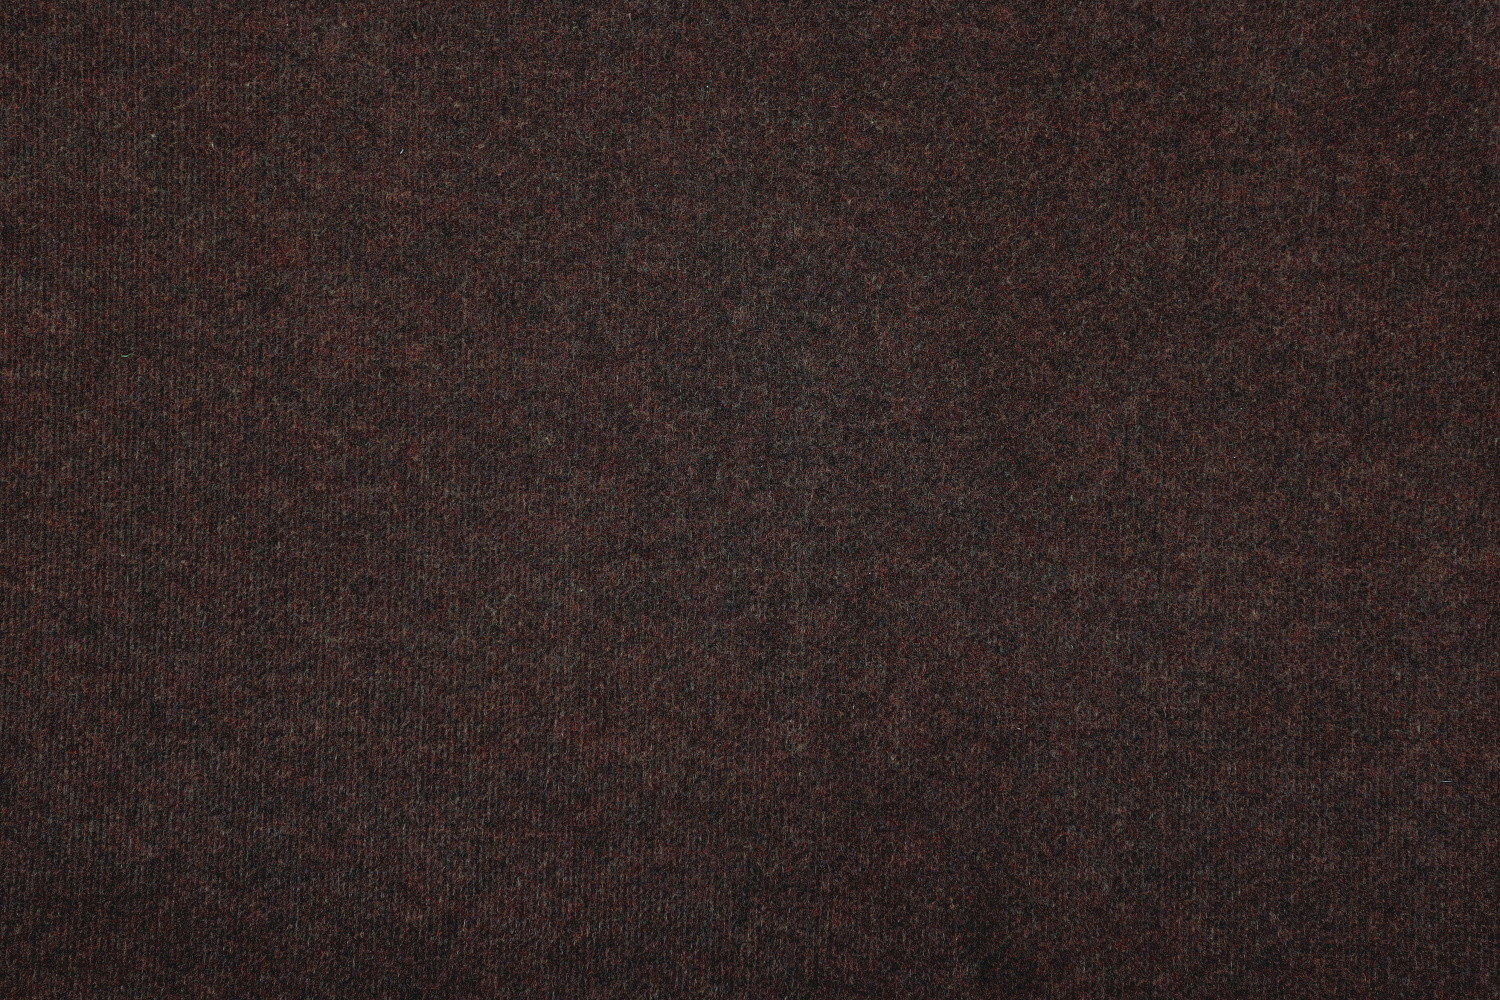 AKCE: 200x250 cm SUPER CENA: Hnědý výstavový koberec Budget metrážní - Bez obšití cm Aladin Holland carpets